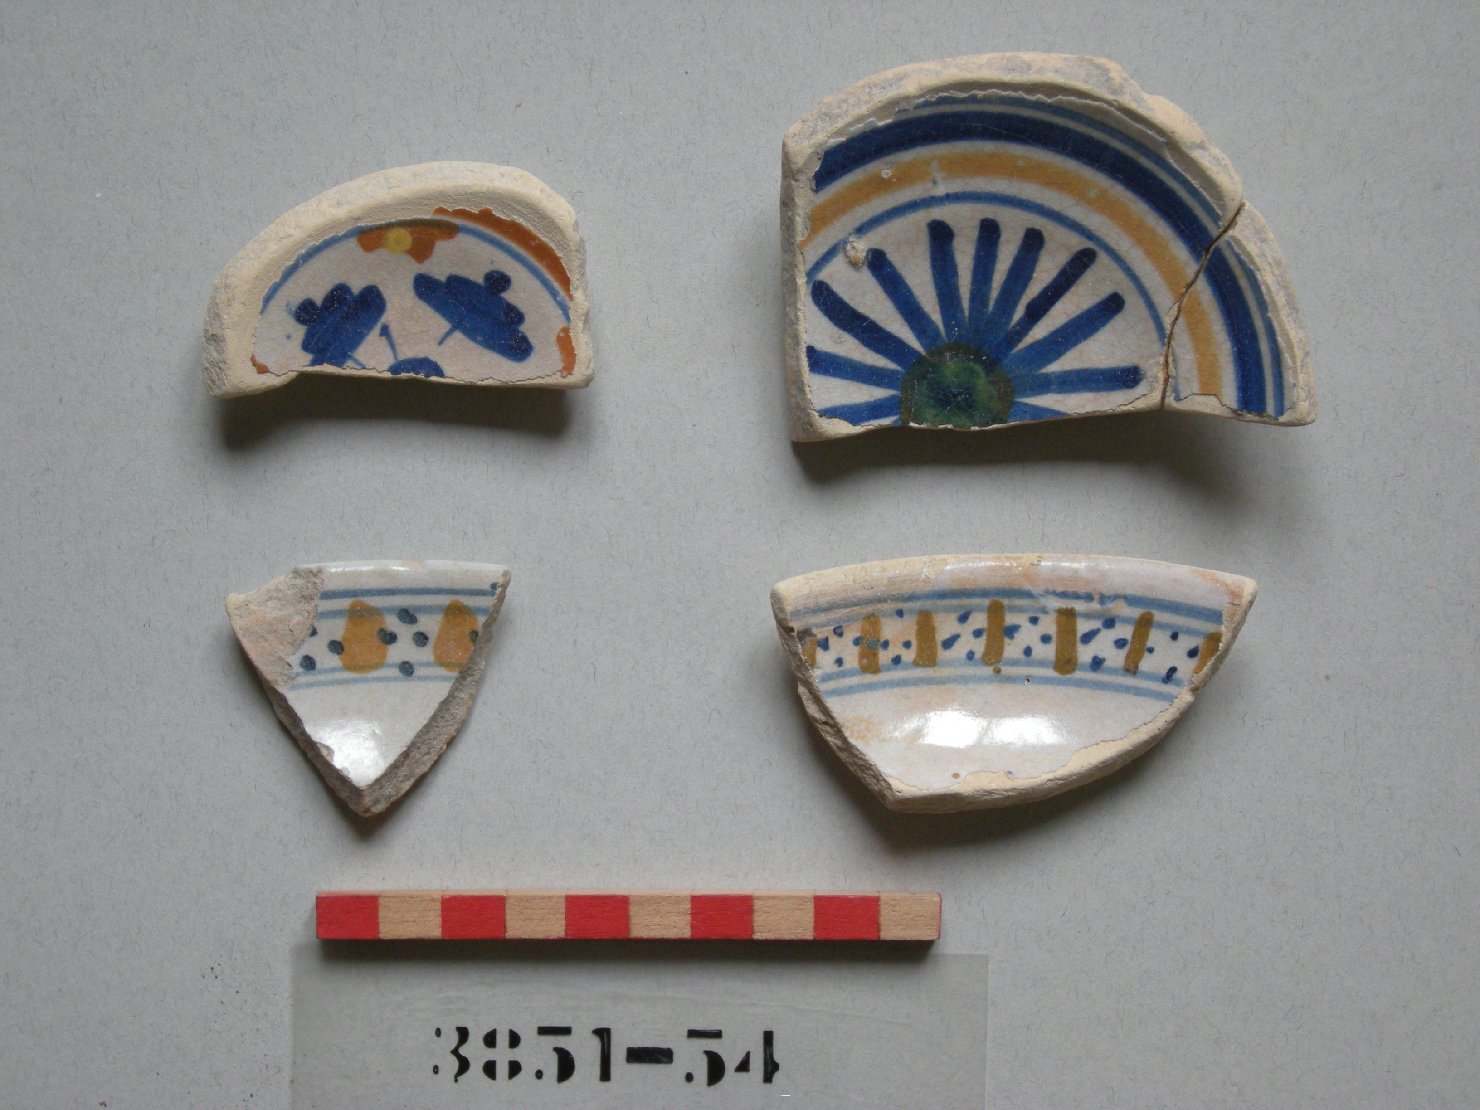 motivi decorativi geometrici (scodella, frammento) - produzione romagnola (secc. XV/ XVI)